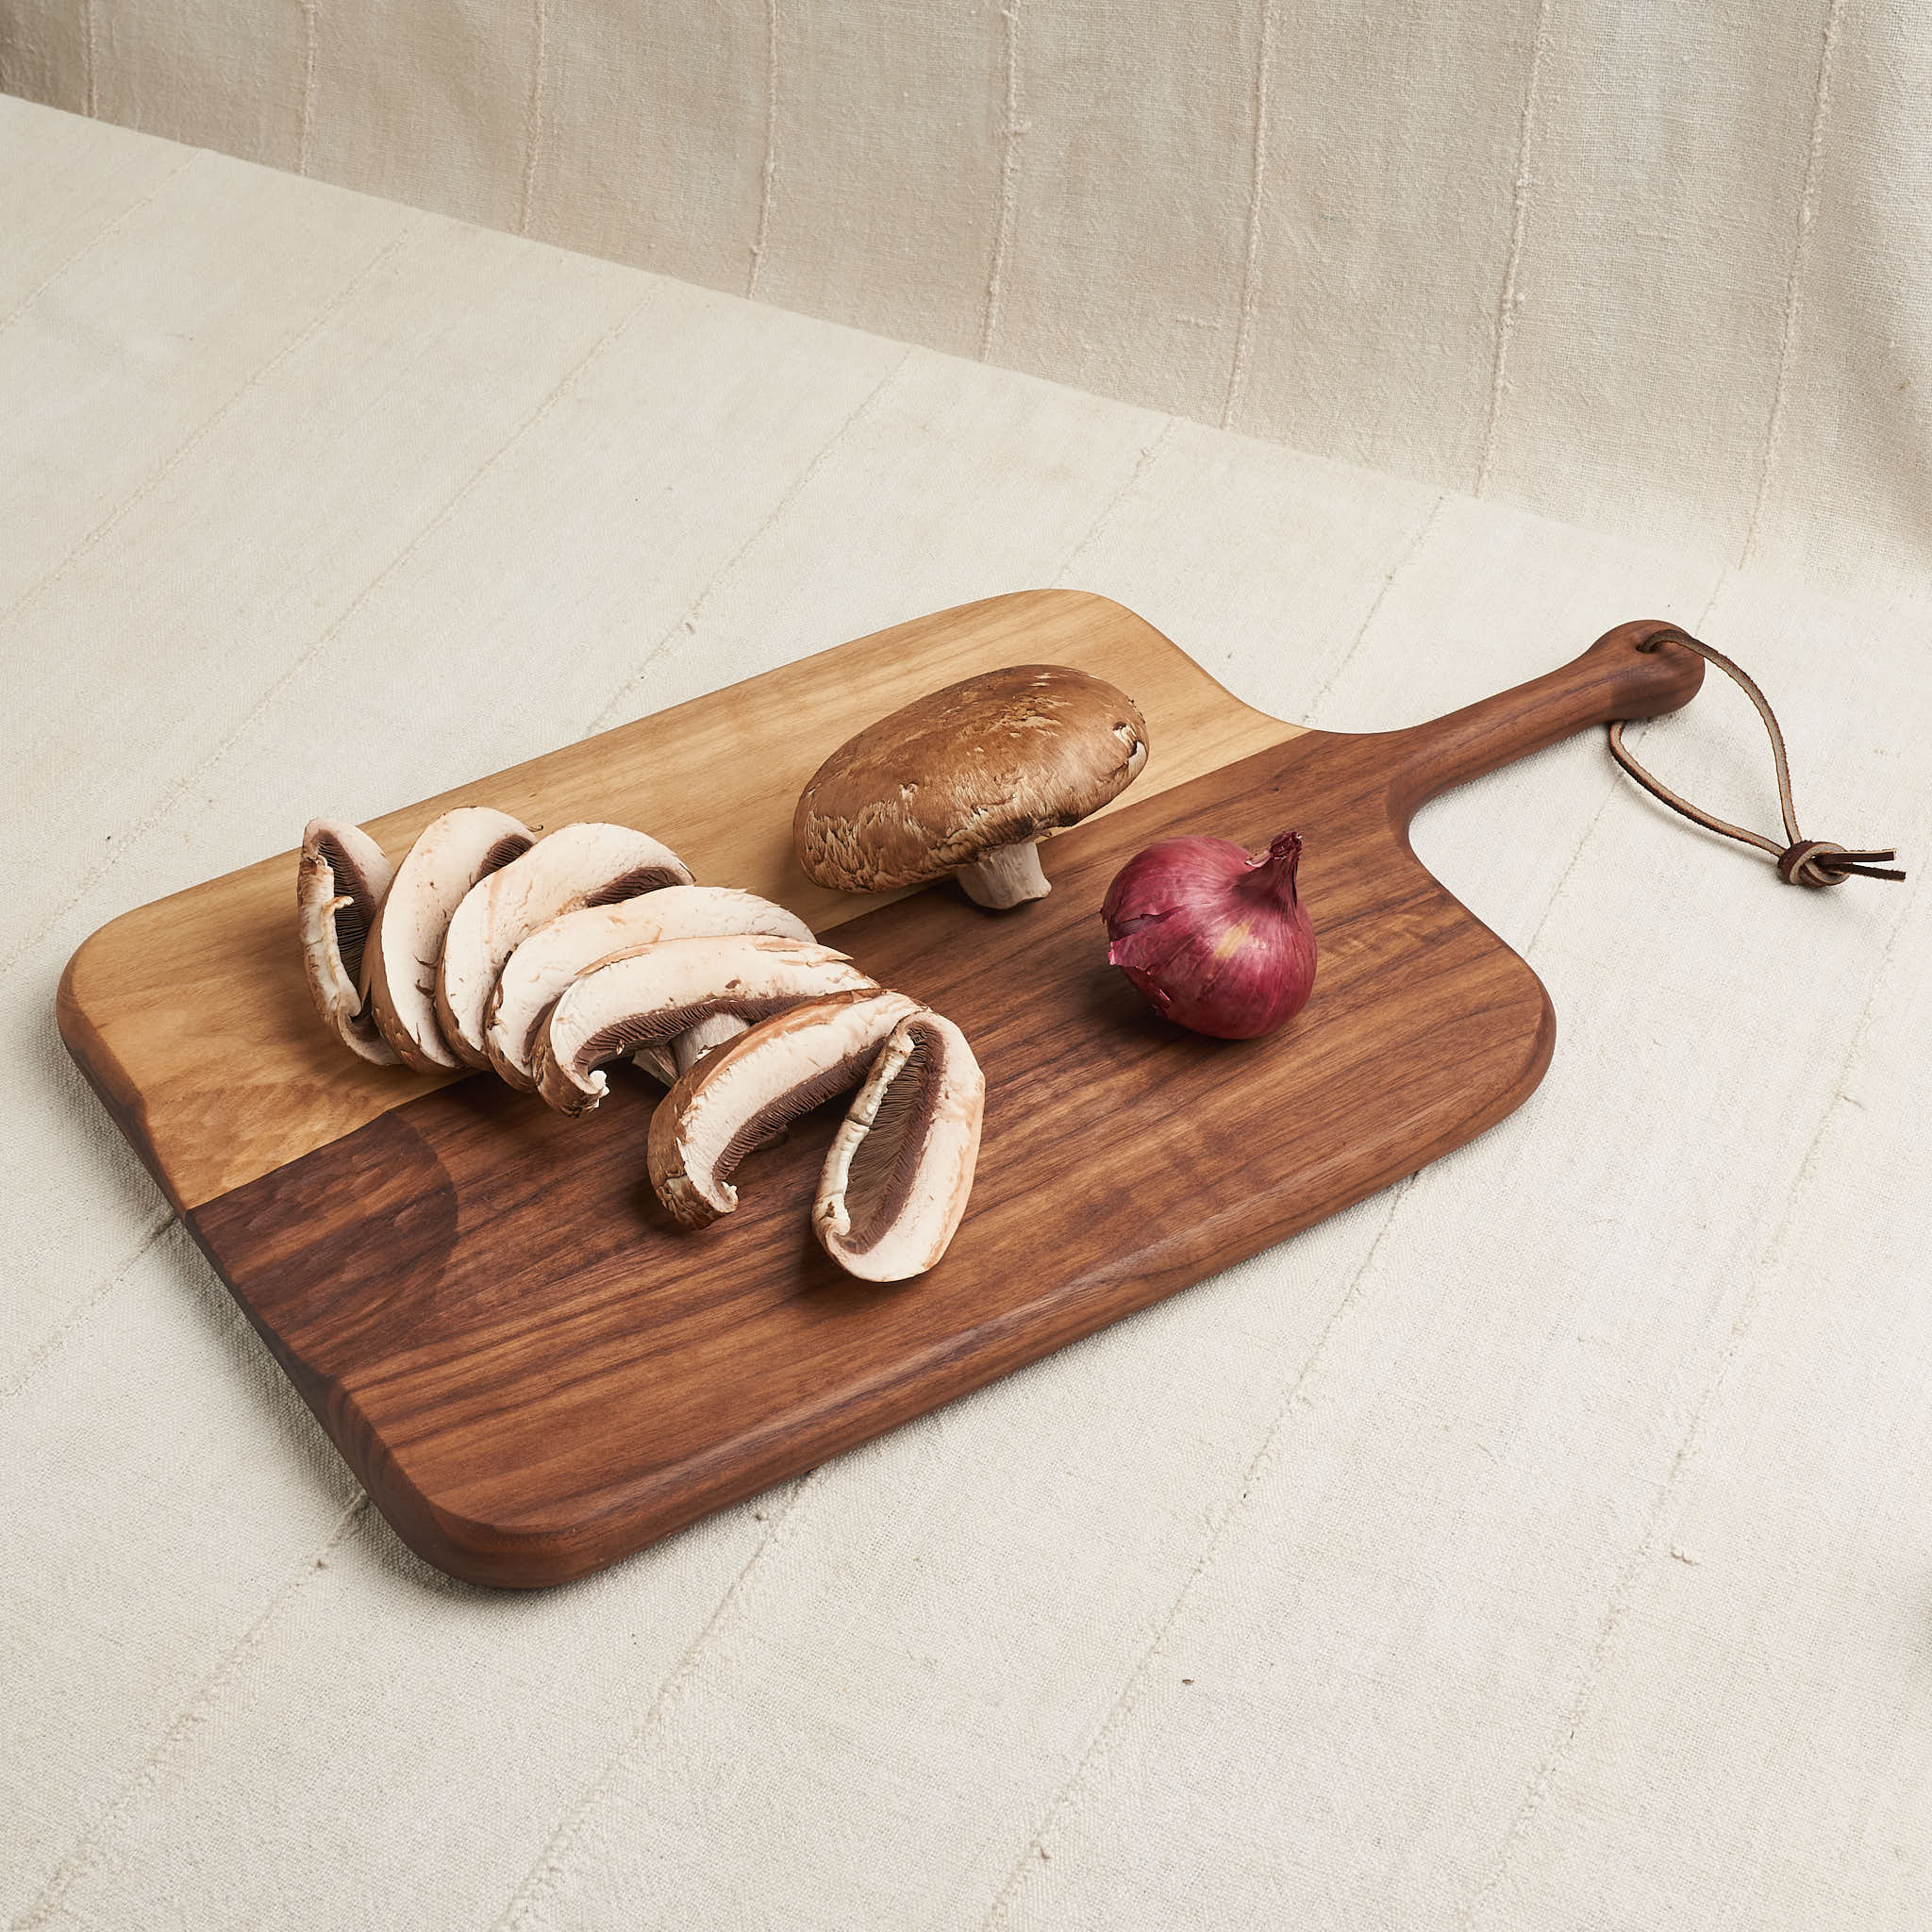 http://housework.store/cdn/shop/products/de-jong-cutting-board-serving-board-natural-walnut-1.jpg?v=1638509594